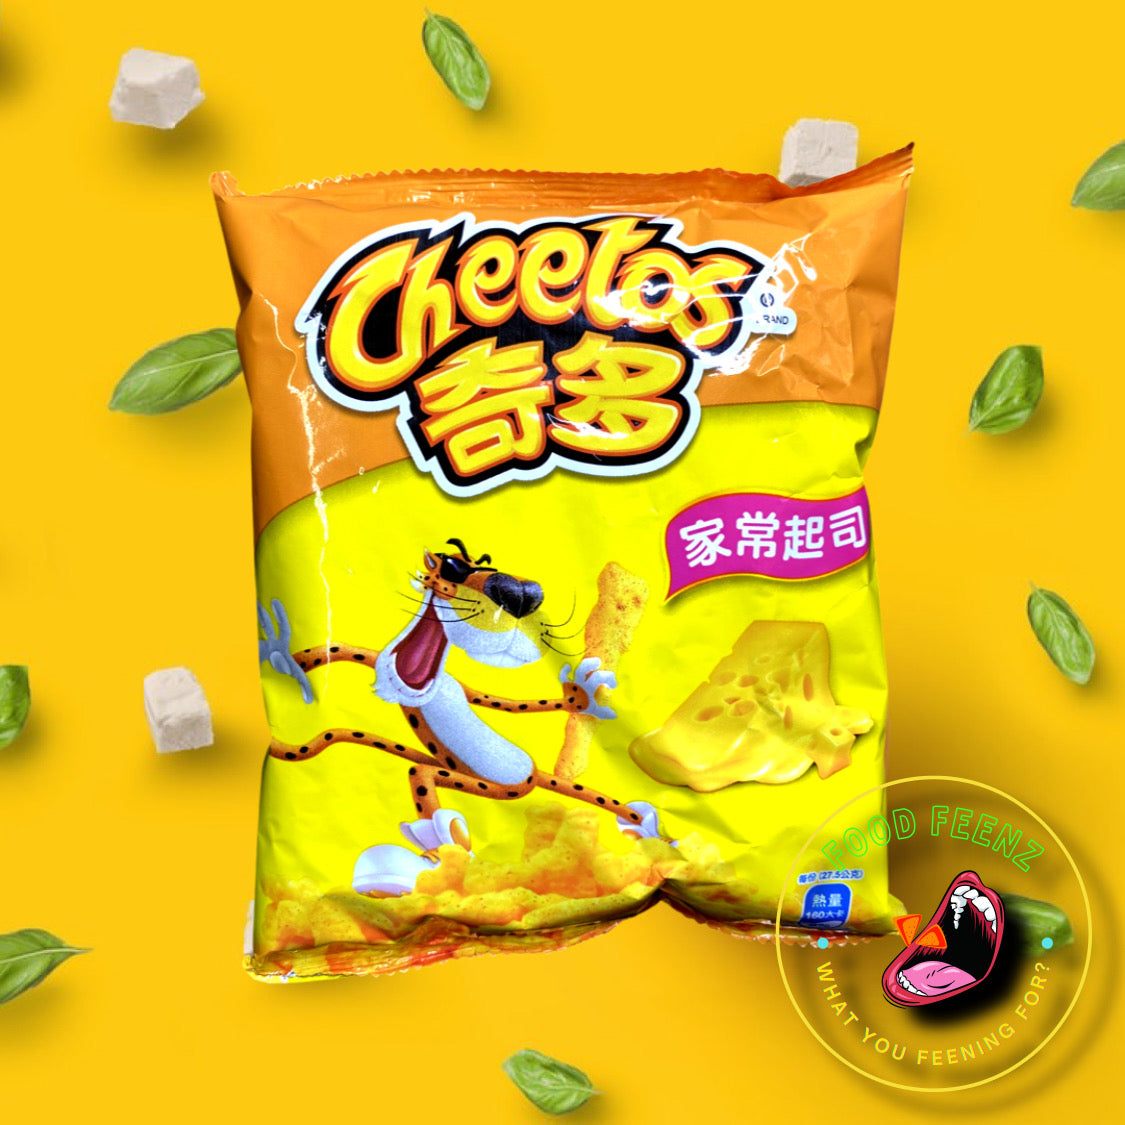 Cheetos Corn Roll Cheese Flavor (Taiwan)